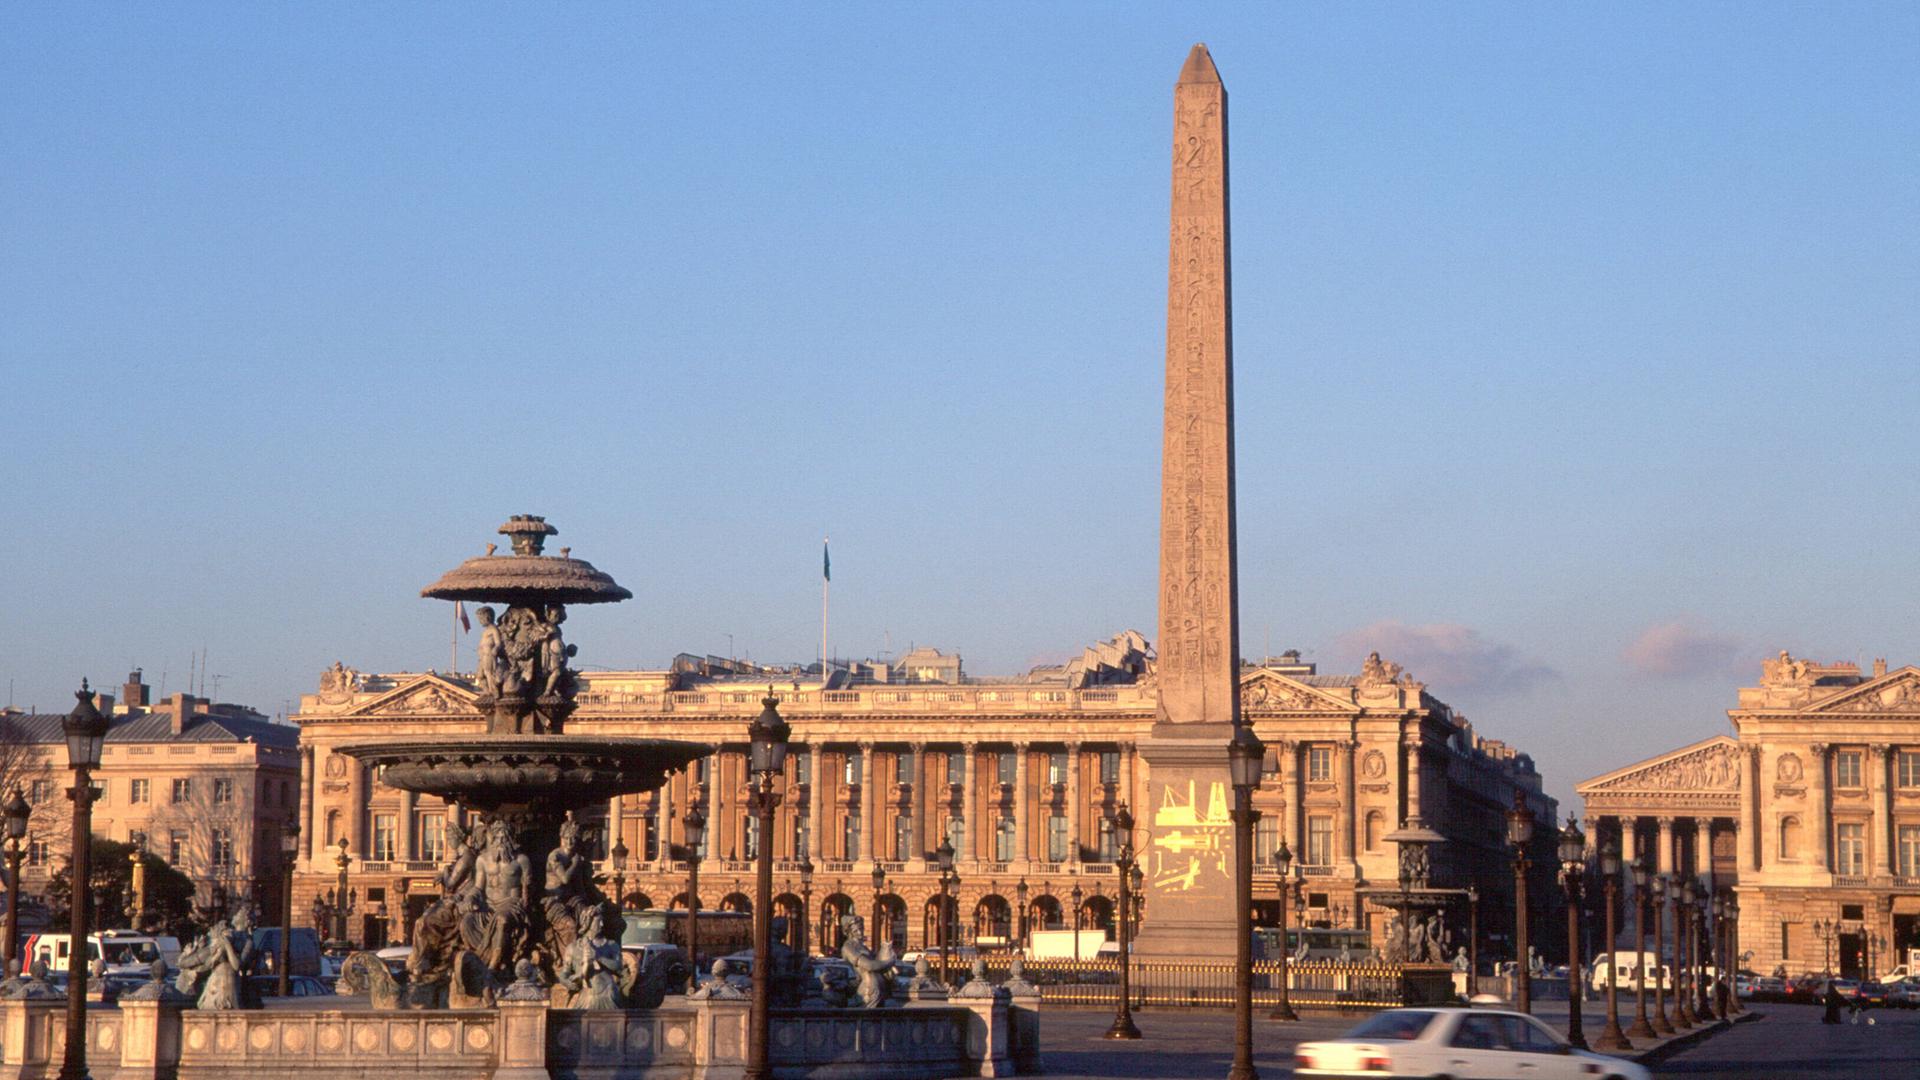 Der Place de la Concorde in Paris mit dem Obelisken.